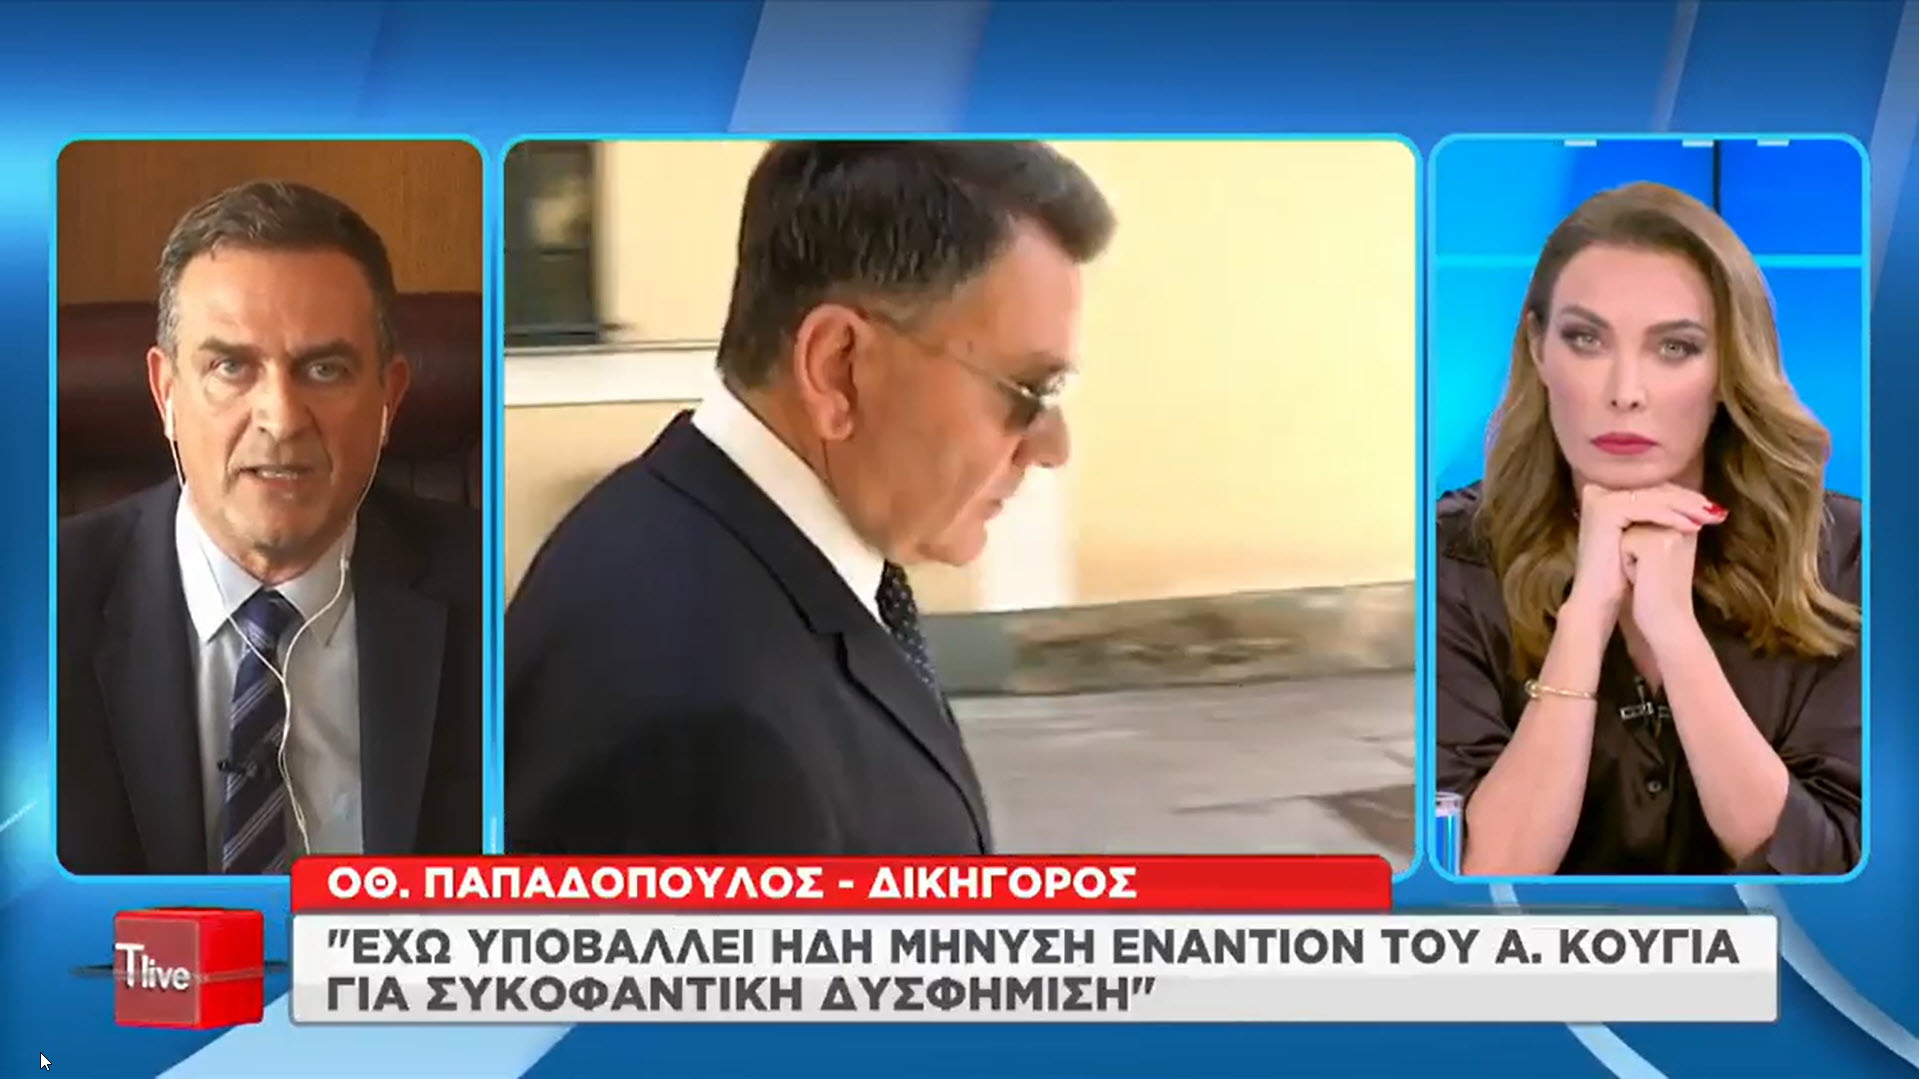 Ο. Παπαδόπουλος: Έχω υποβάλει ήδη μήνυση εναντίον του Αλ. Κούγια!